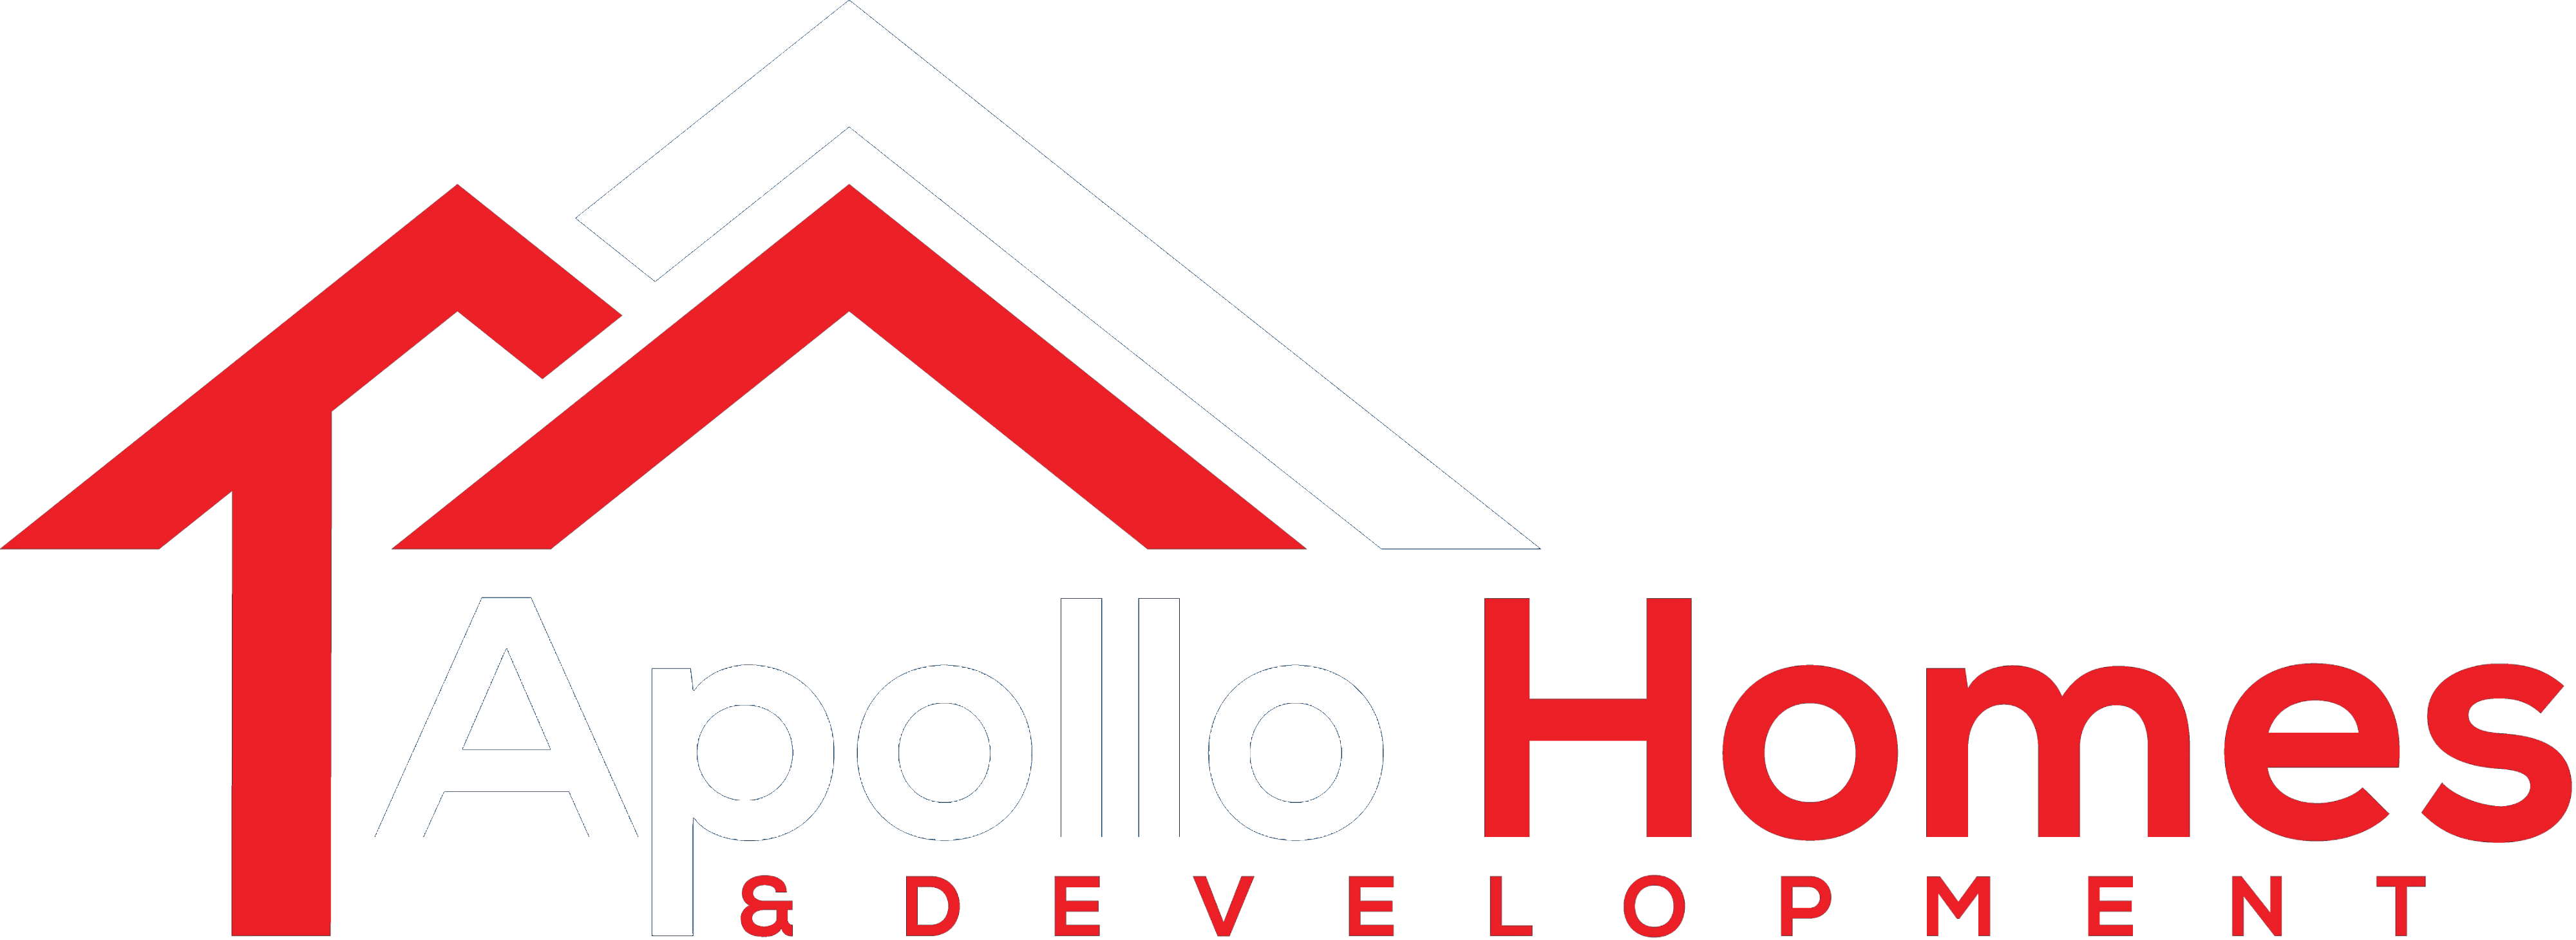 Apollo Homes & Development